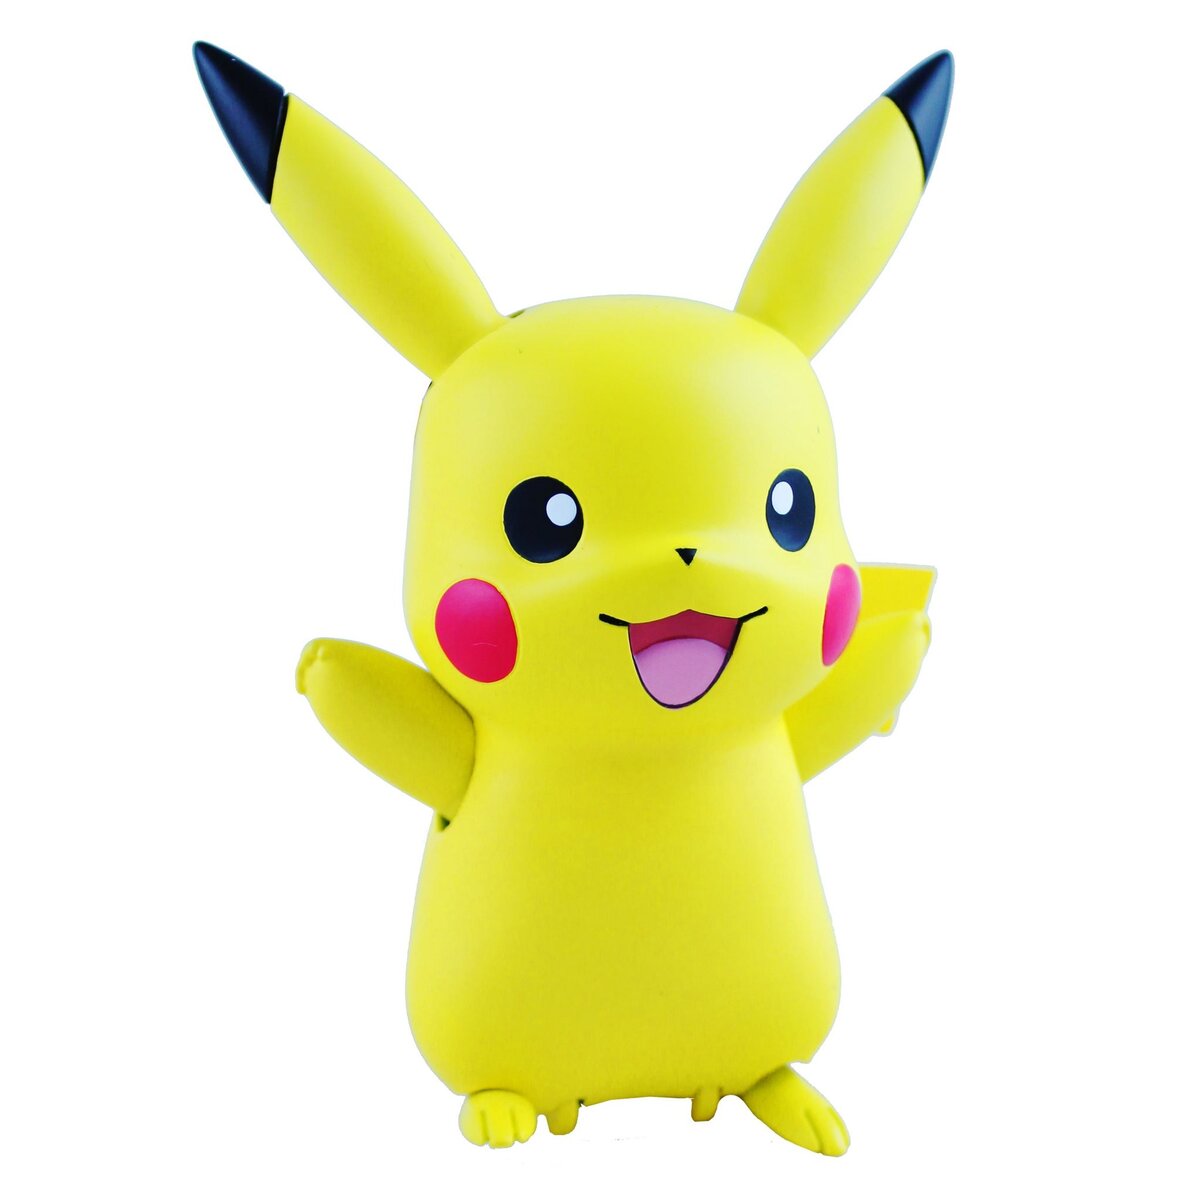 Pikachu interactif et accessoires - Pokémon